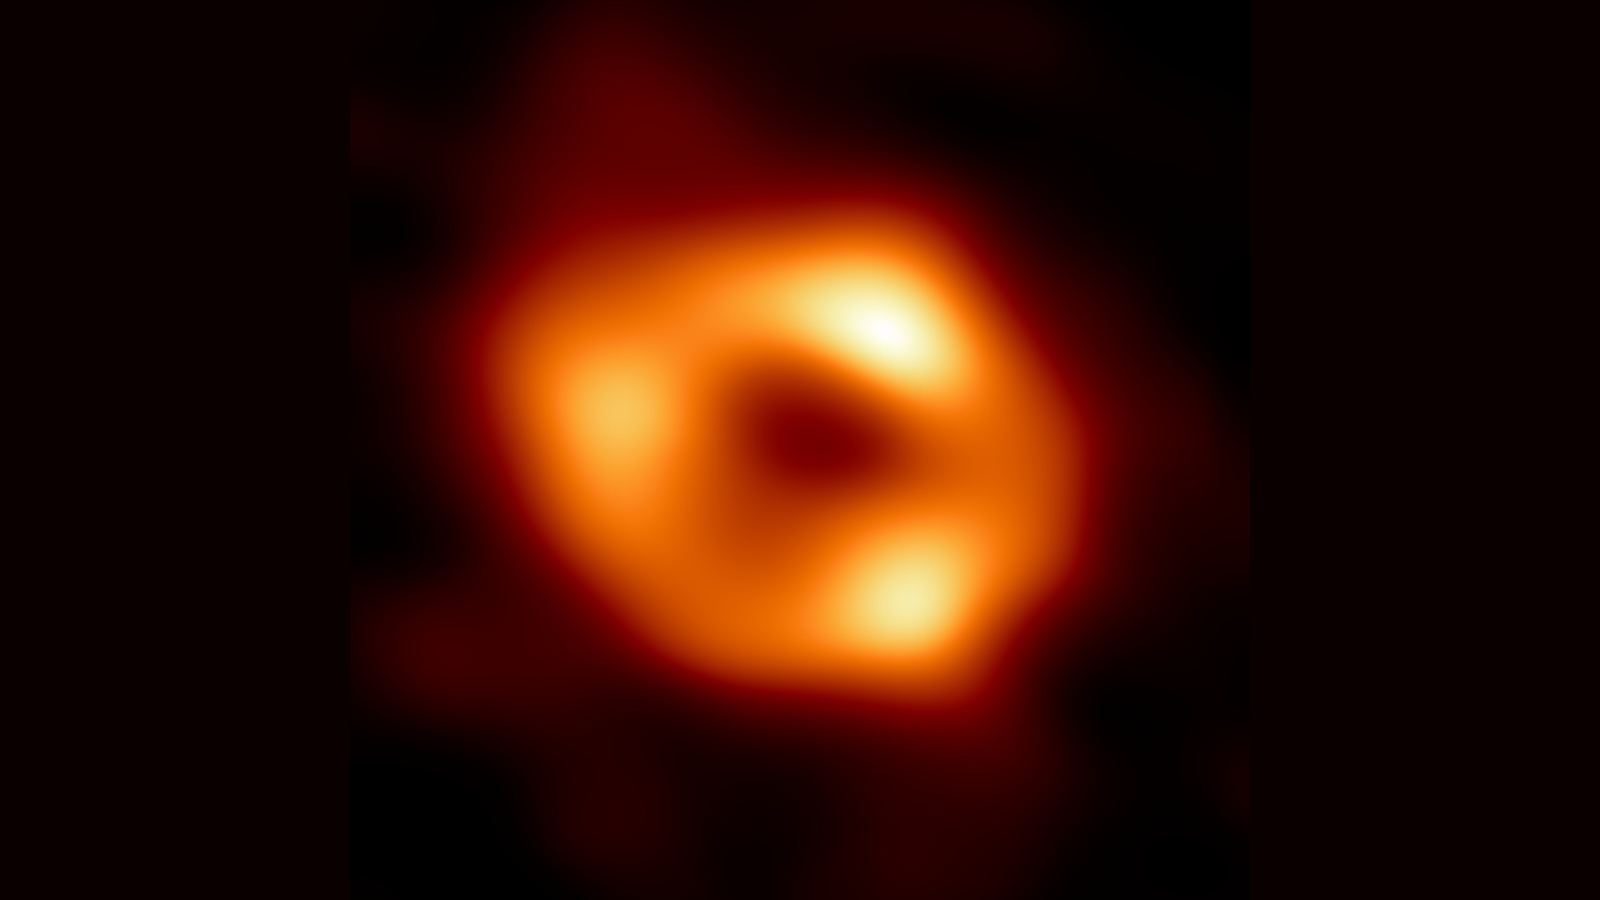 Sagittarius svarta hål, del 3: Vad har vi lärt oss?